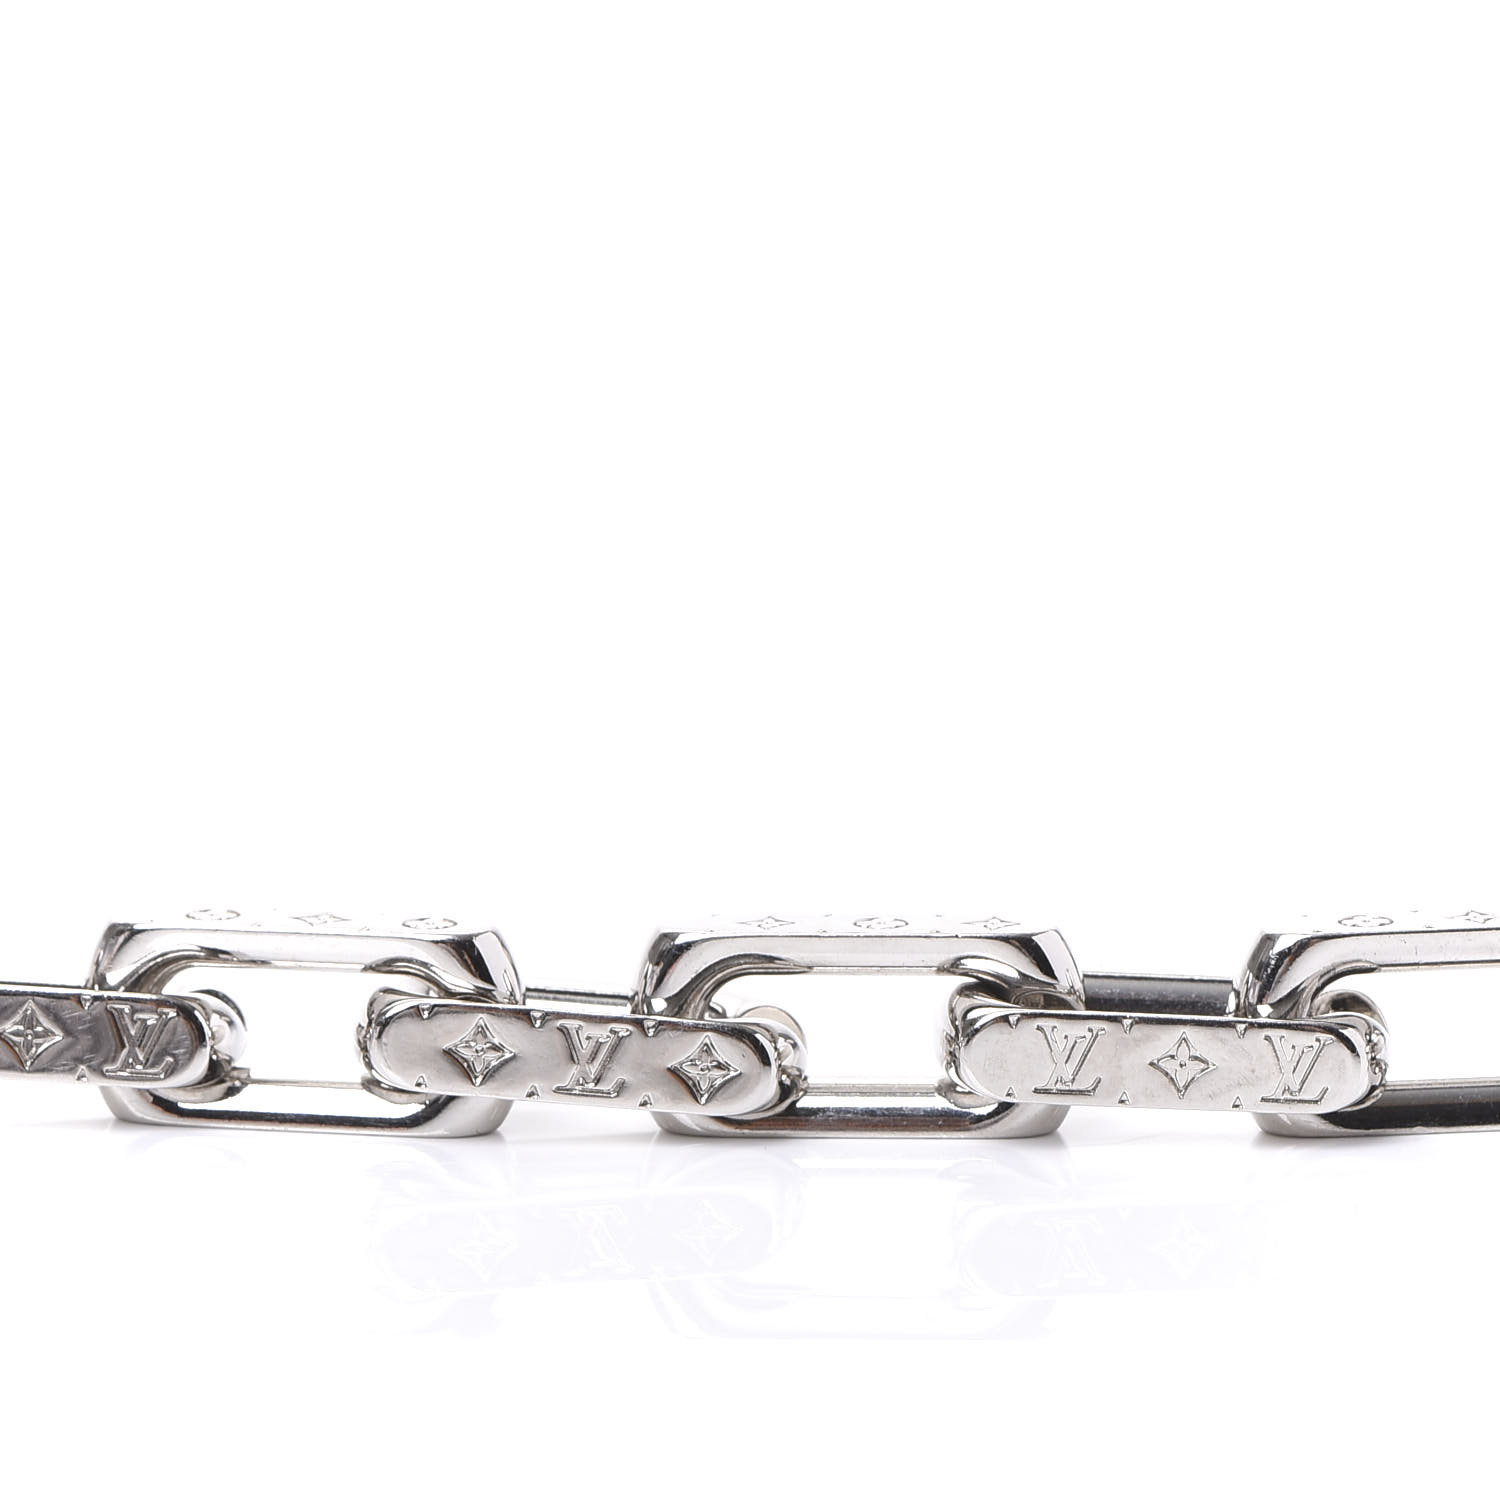 Louis Vuitton Monogram Chain Bracelet, Silver, L